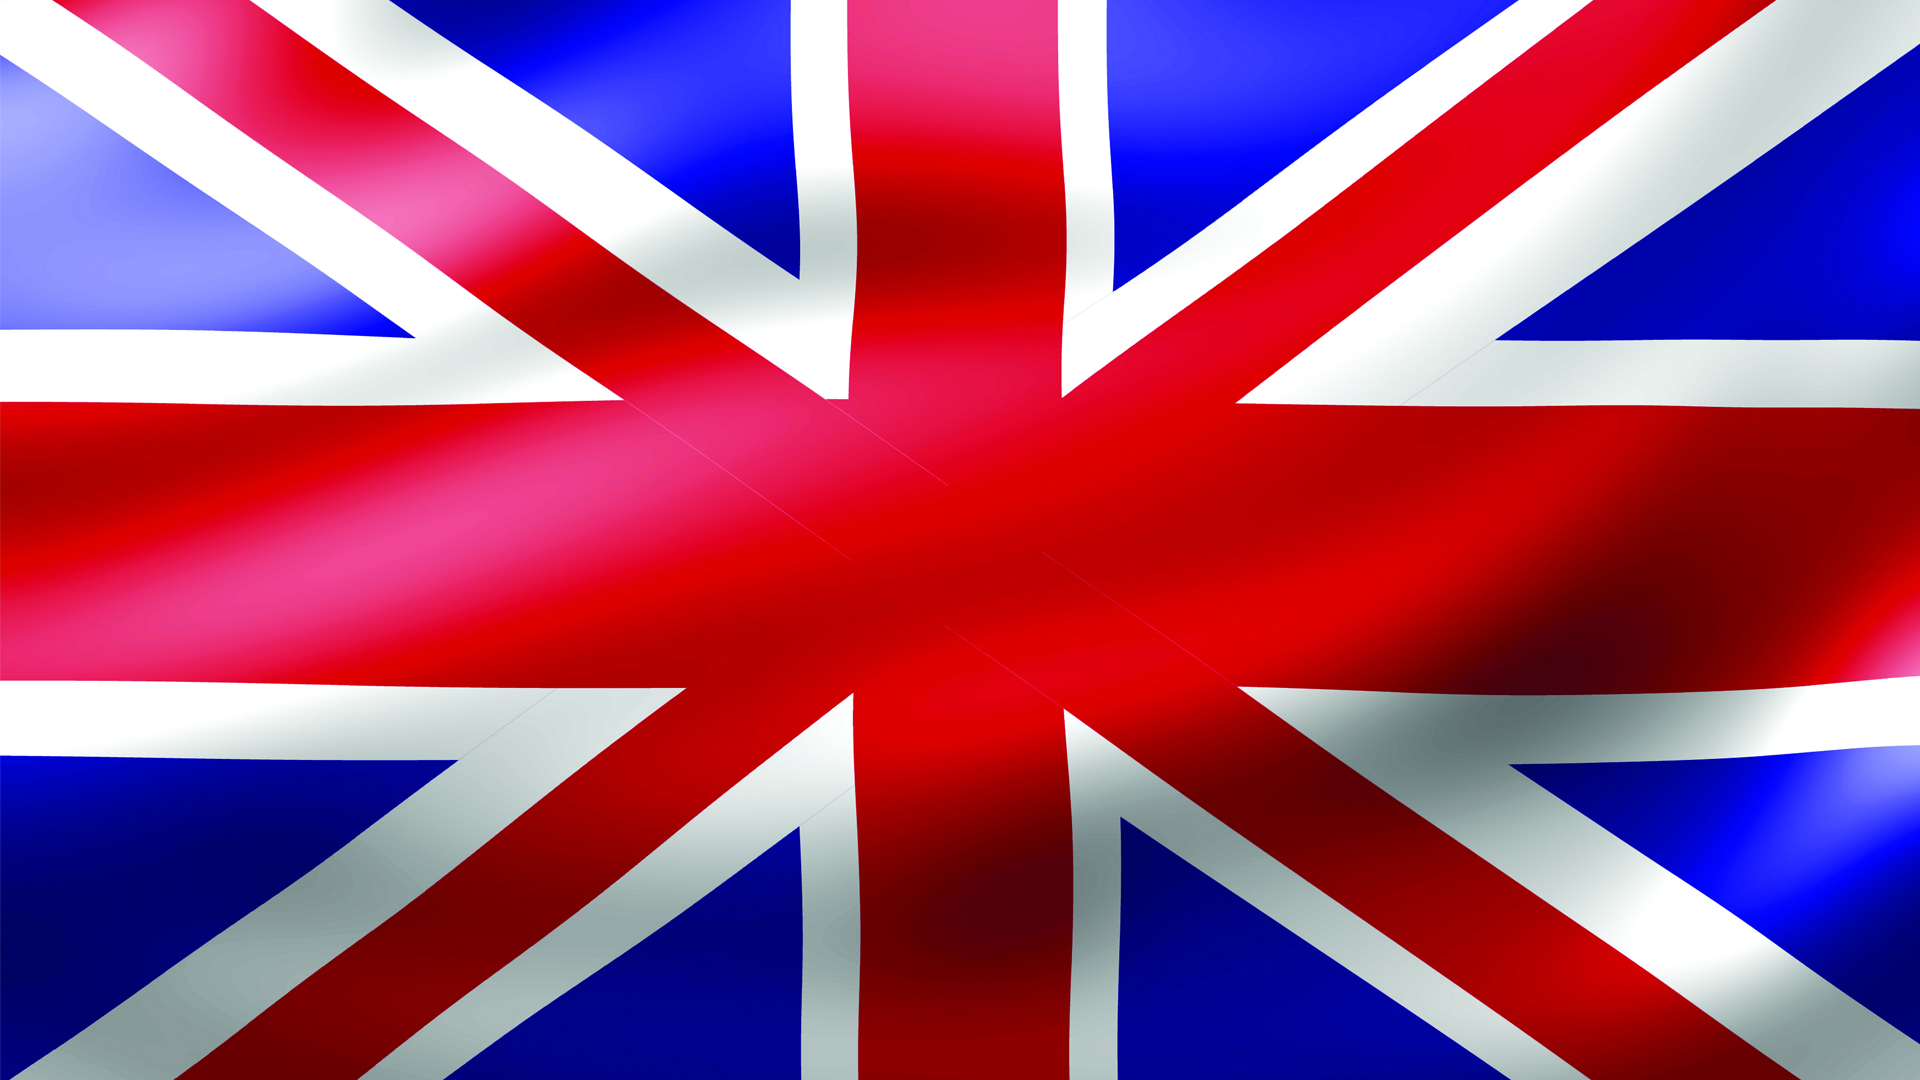 Почему флаг англии. Флаг Великобритании. Буюк Британия флаг. Ф̆̈л̆̈ӑ̈г̆̈ Ӑ̈н̆̈г̆̈л̆̈й̈я̆̈. Цвета британского флага.